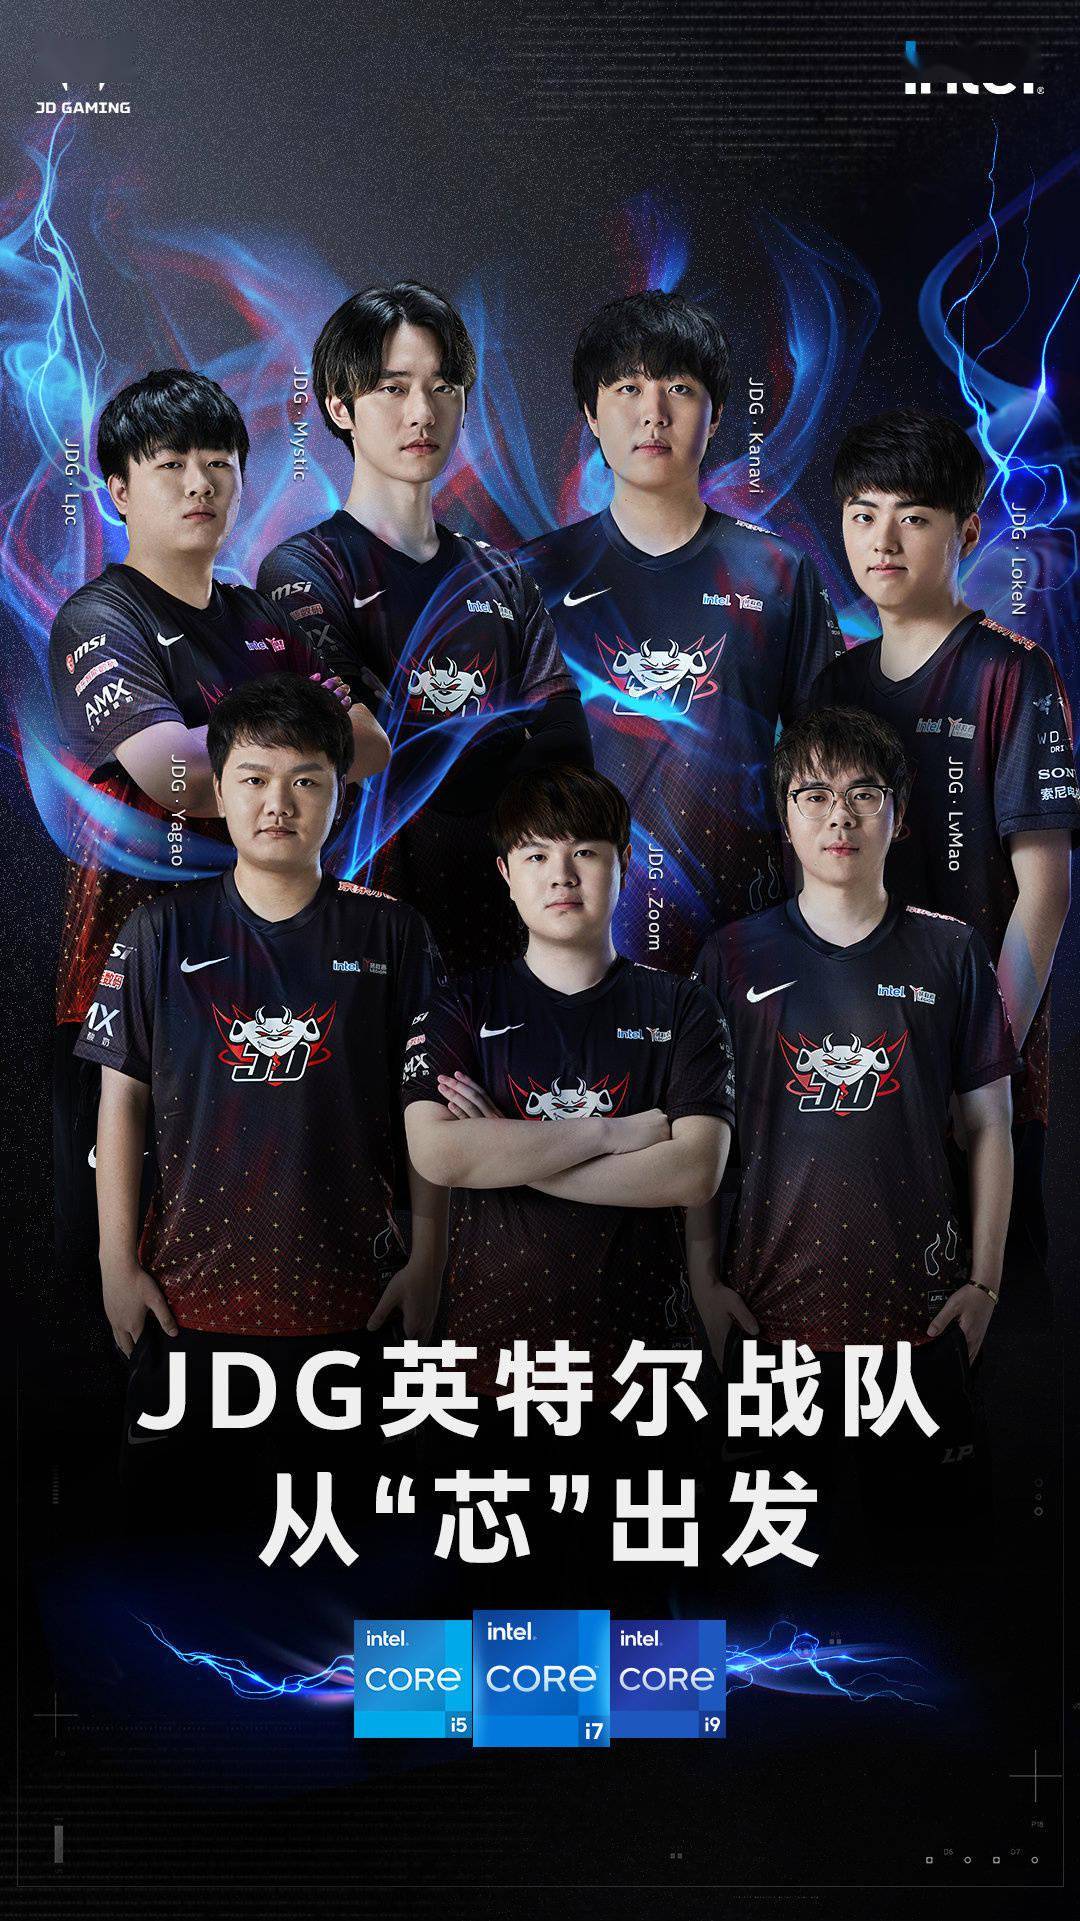 京东JDG正式更名为JDG英特尔电子竞技俱乐部